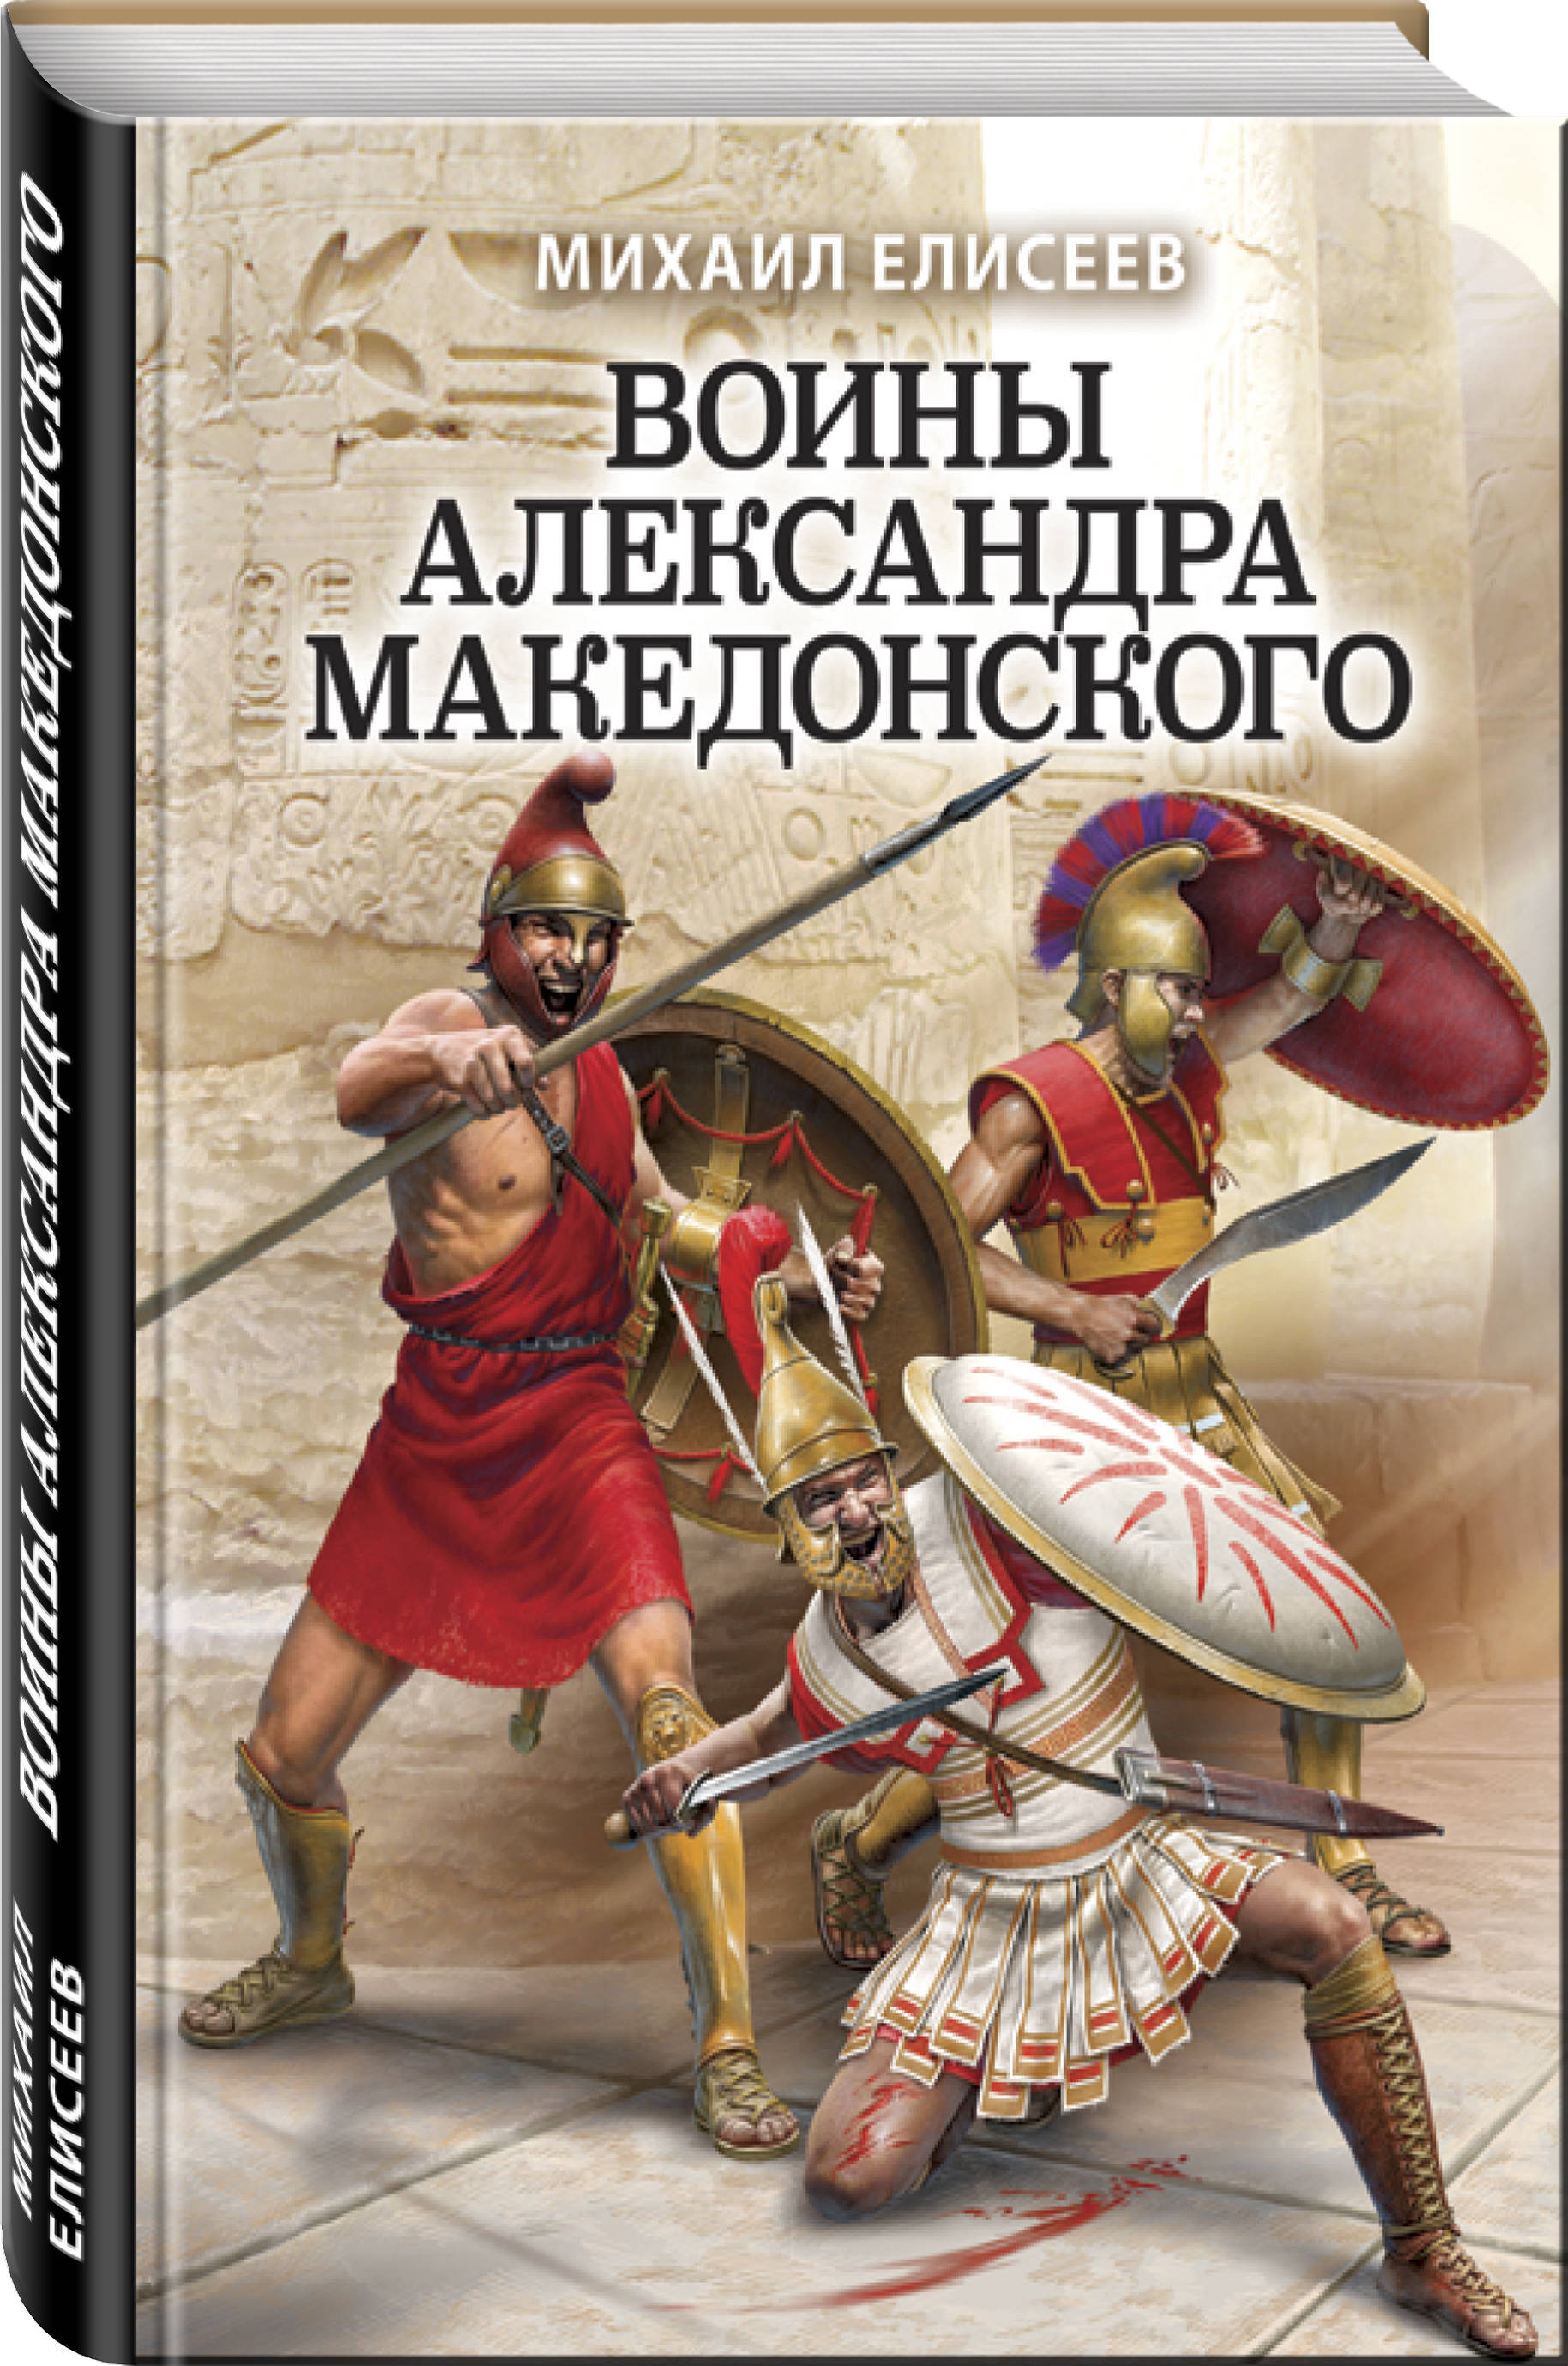 Имя отца македонского. Книга воин.